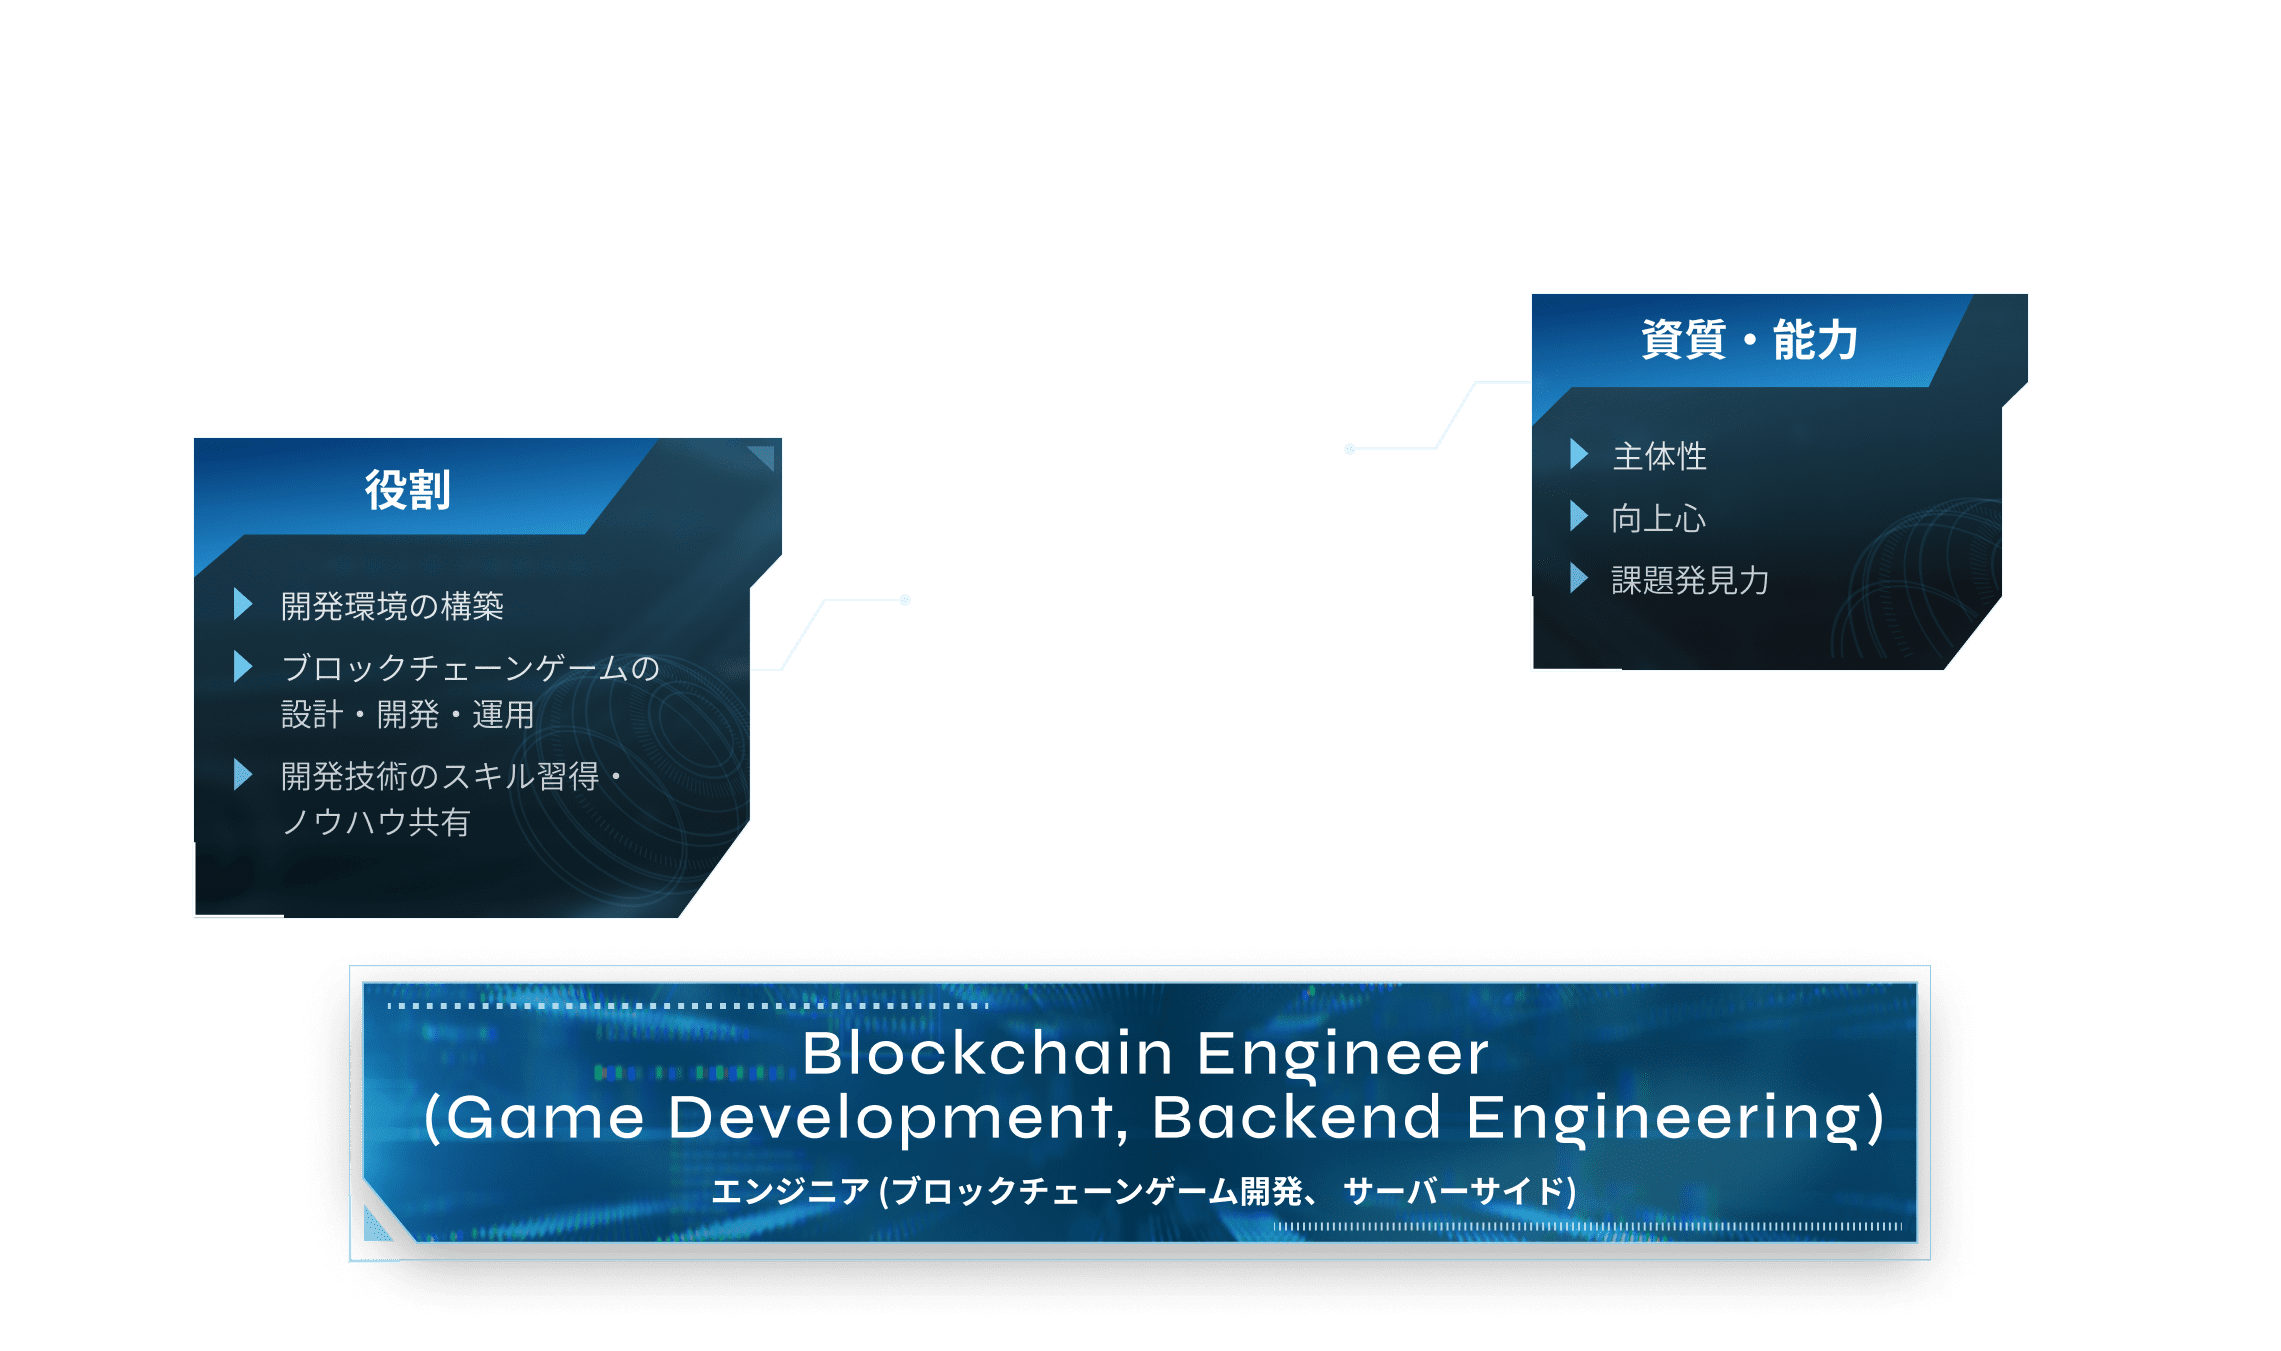 Blockchain Engineer(Game Development, Backend Engineering)エンジニア (ブロックチェーンゲーム開発、 サーバーサイド)